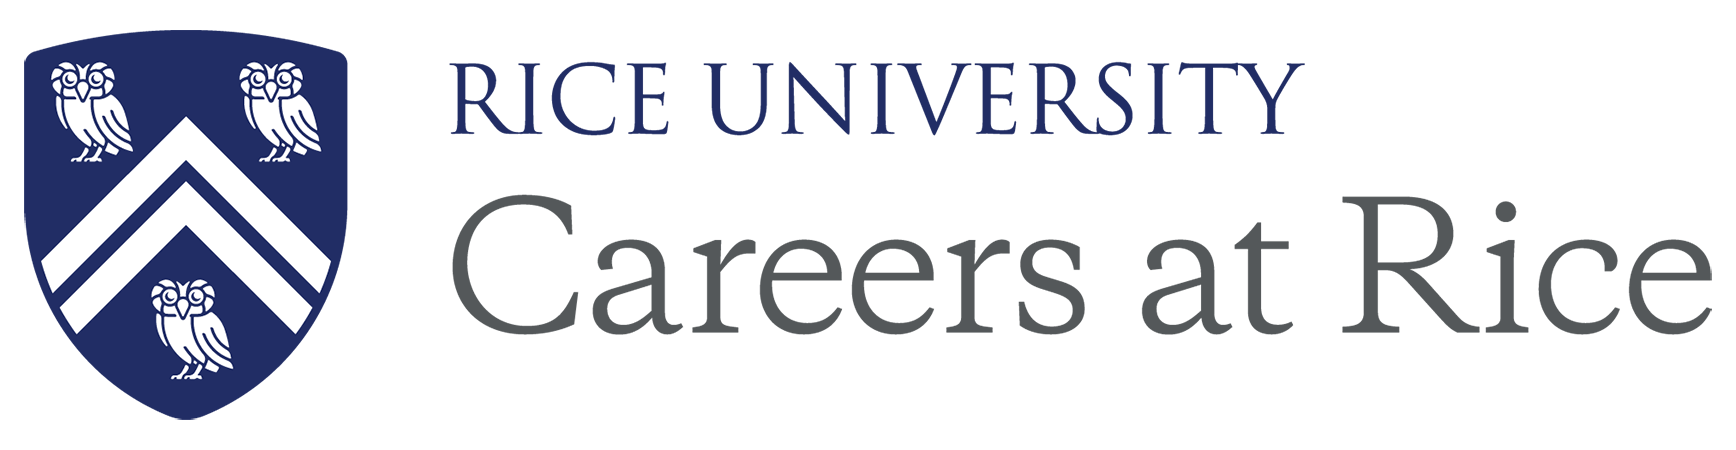 Careers at Rice Logo